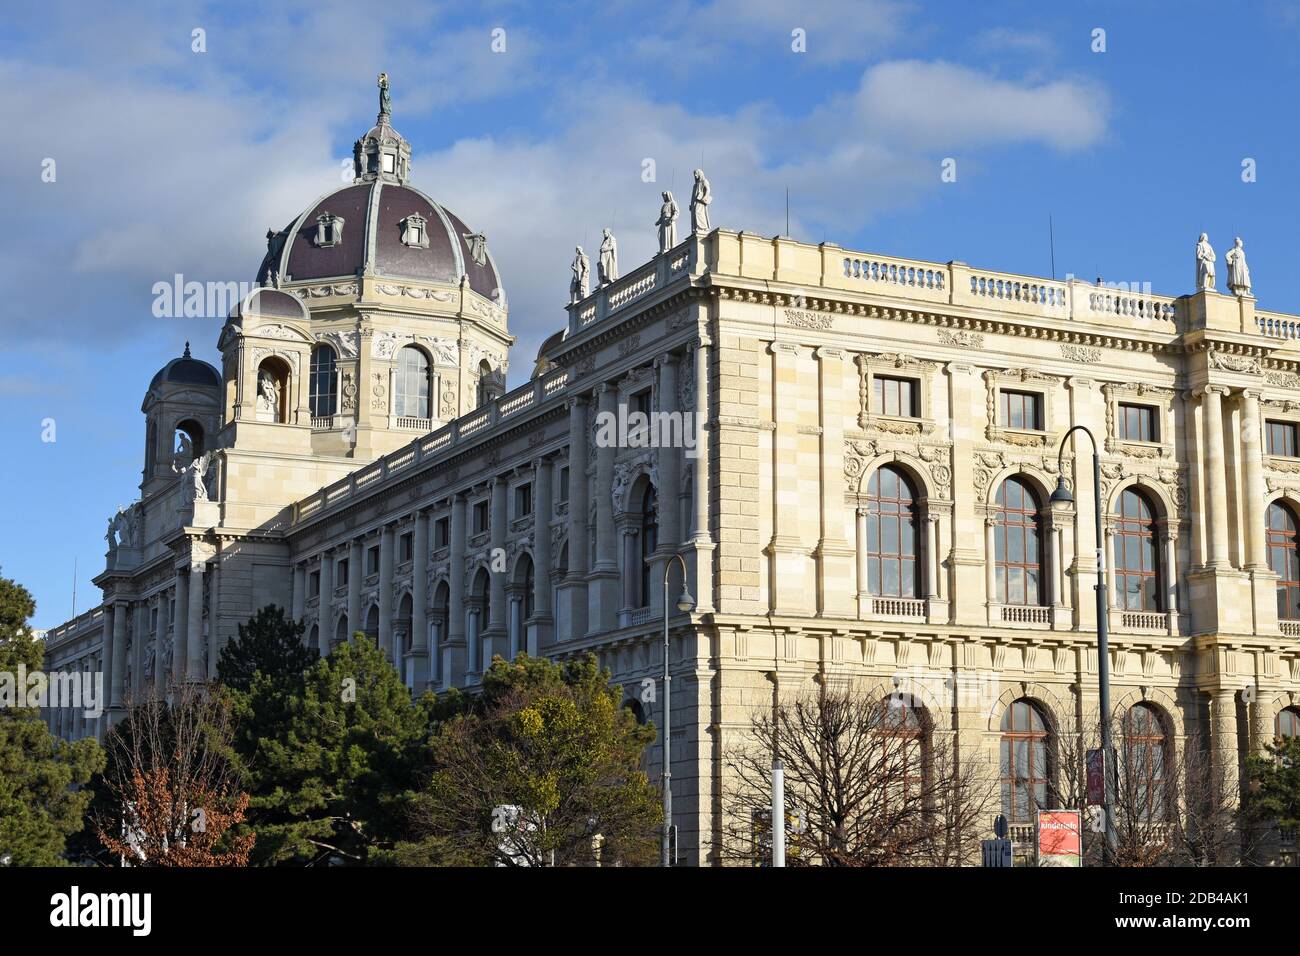 Das Kunsthistorische Museum (KHM) ist ein Kunstmuseum in der österreichischen Hauptstadt Wien. Es zählt zu den größten und bedeutendsten Museen der We Stock Photo